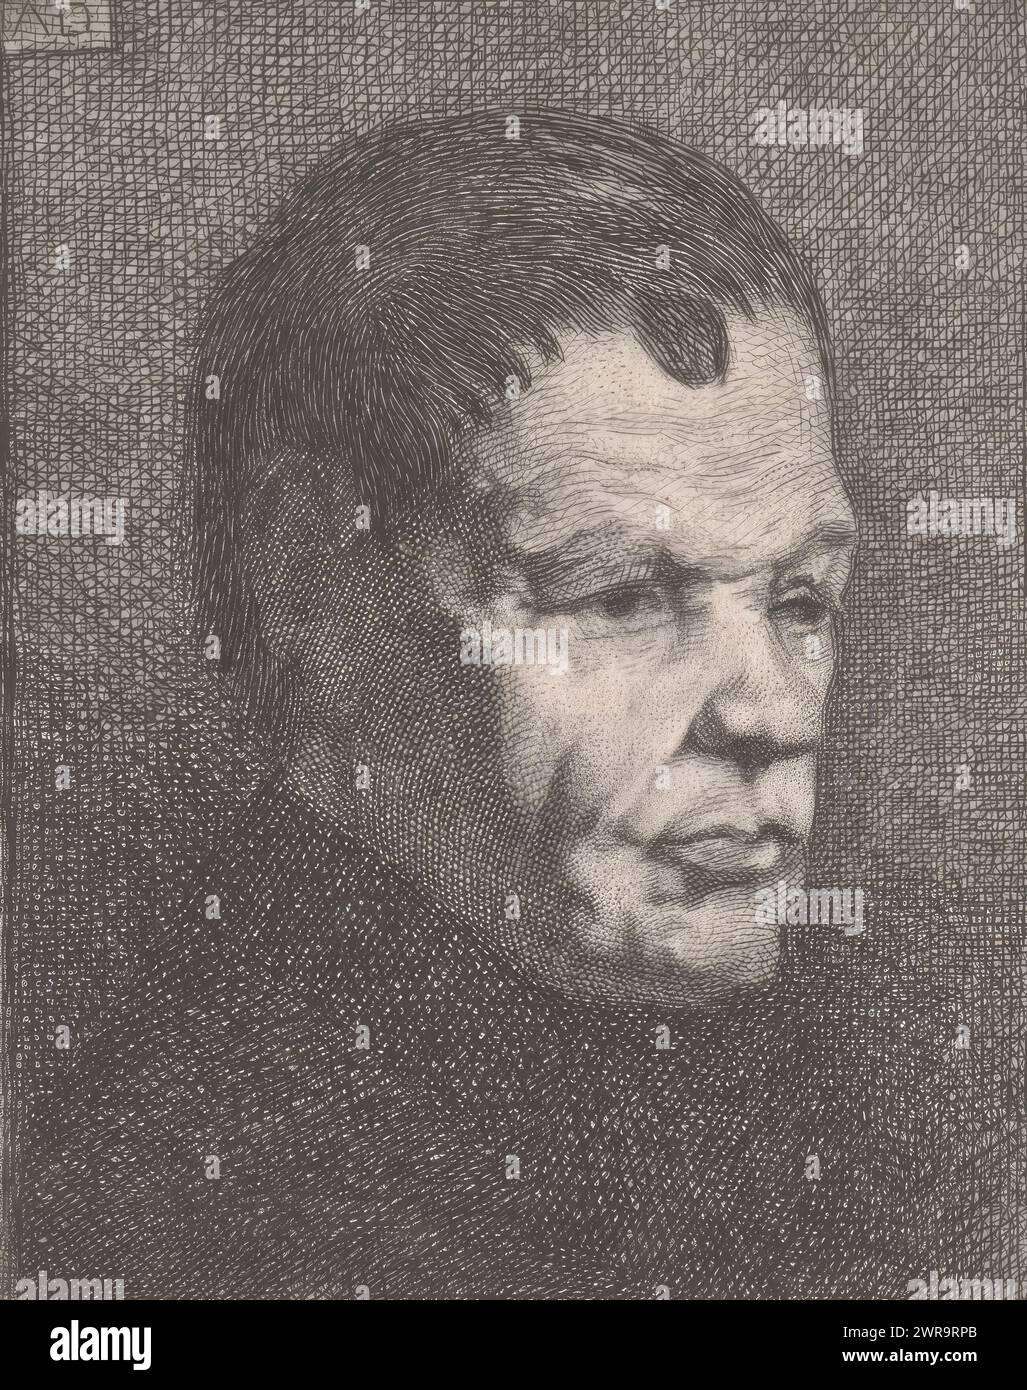 Ritratto del padre dell'artista, stampatore: Auguste Danse, 1864, carta, incisione, altezza 100 mm x larghezza 86 mm, stampa Foto Stock